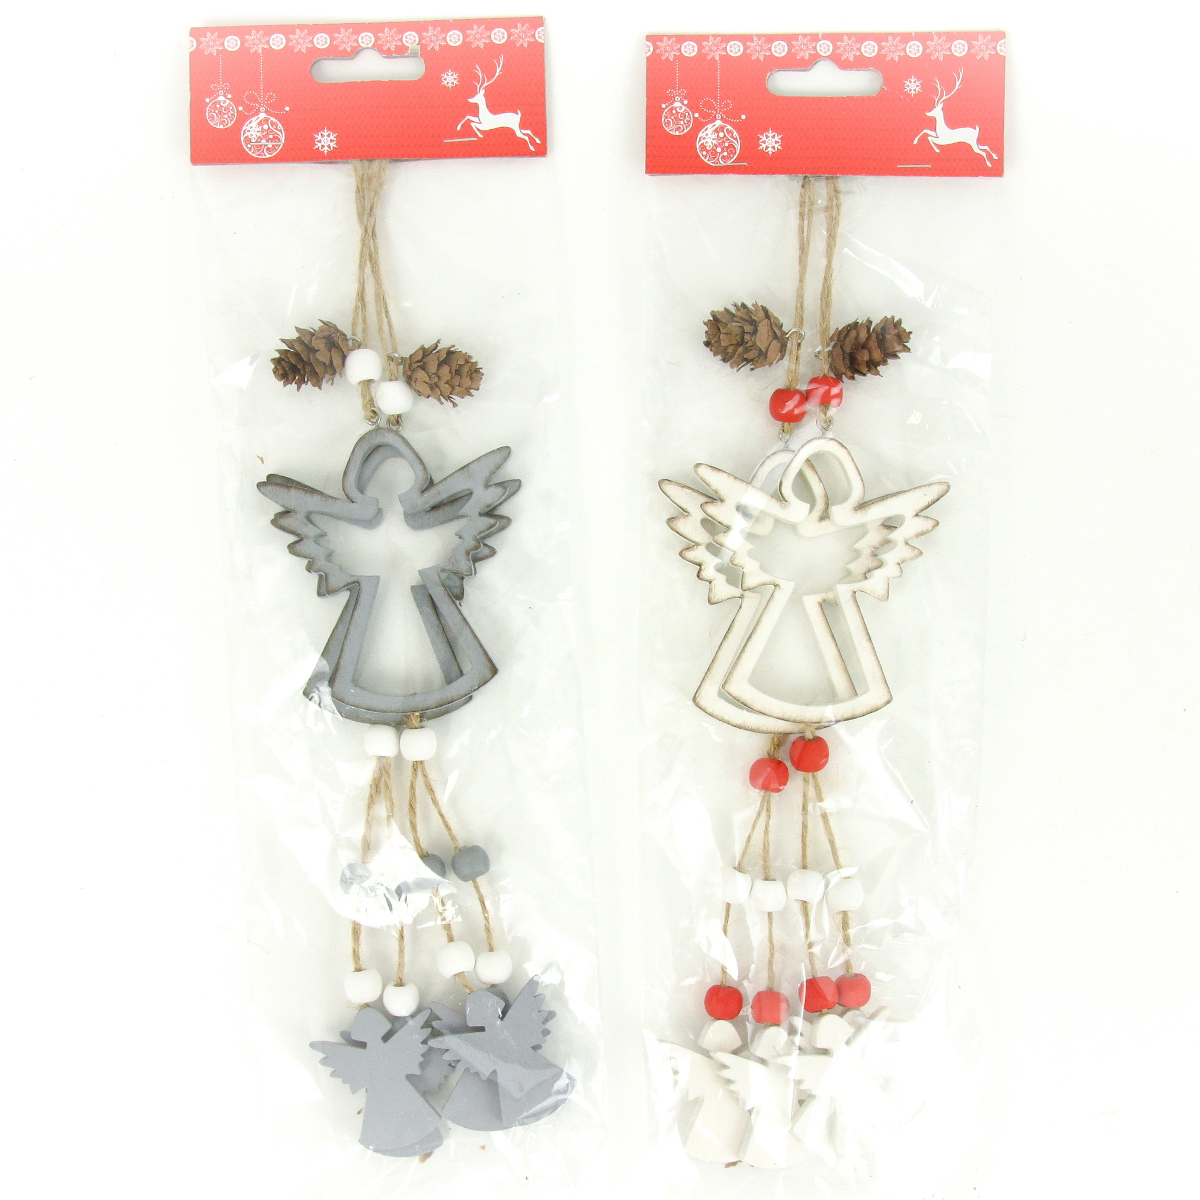 Andělíček, vánoční dřevěná dekorace na pověšení, barva bílá, šedá,  2 kusy v sáč